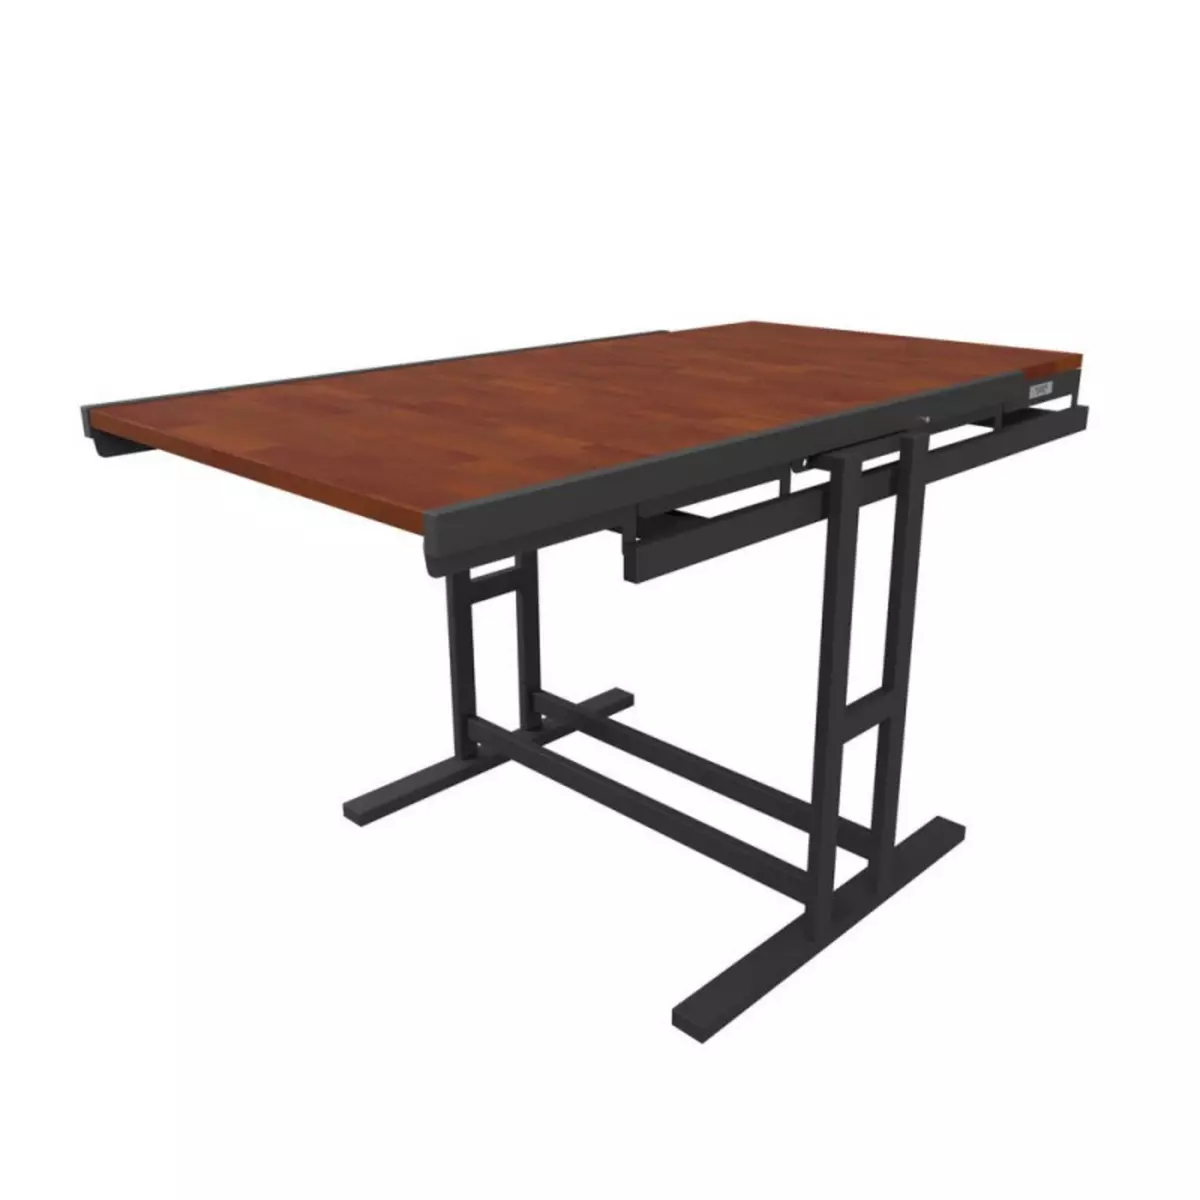 BLUMIE Table modulable en Bois (L140 x l80 x H77 cm) convertible en Etagère - style industriel - Couleur Chêne naturel